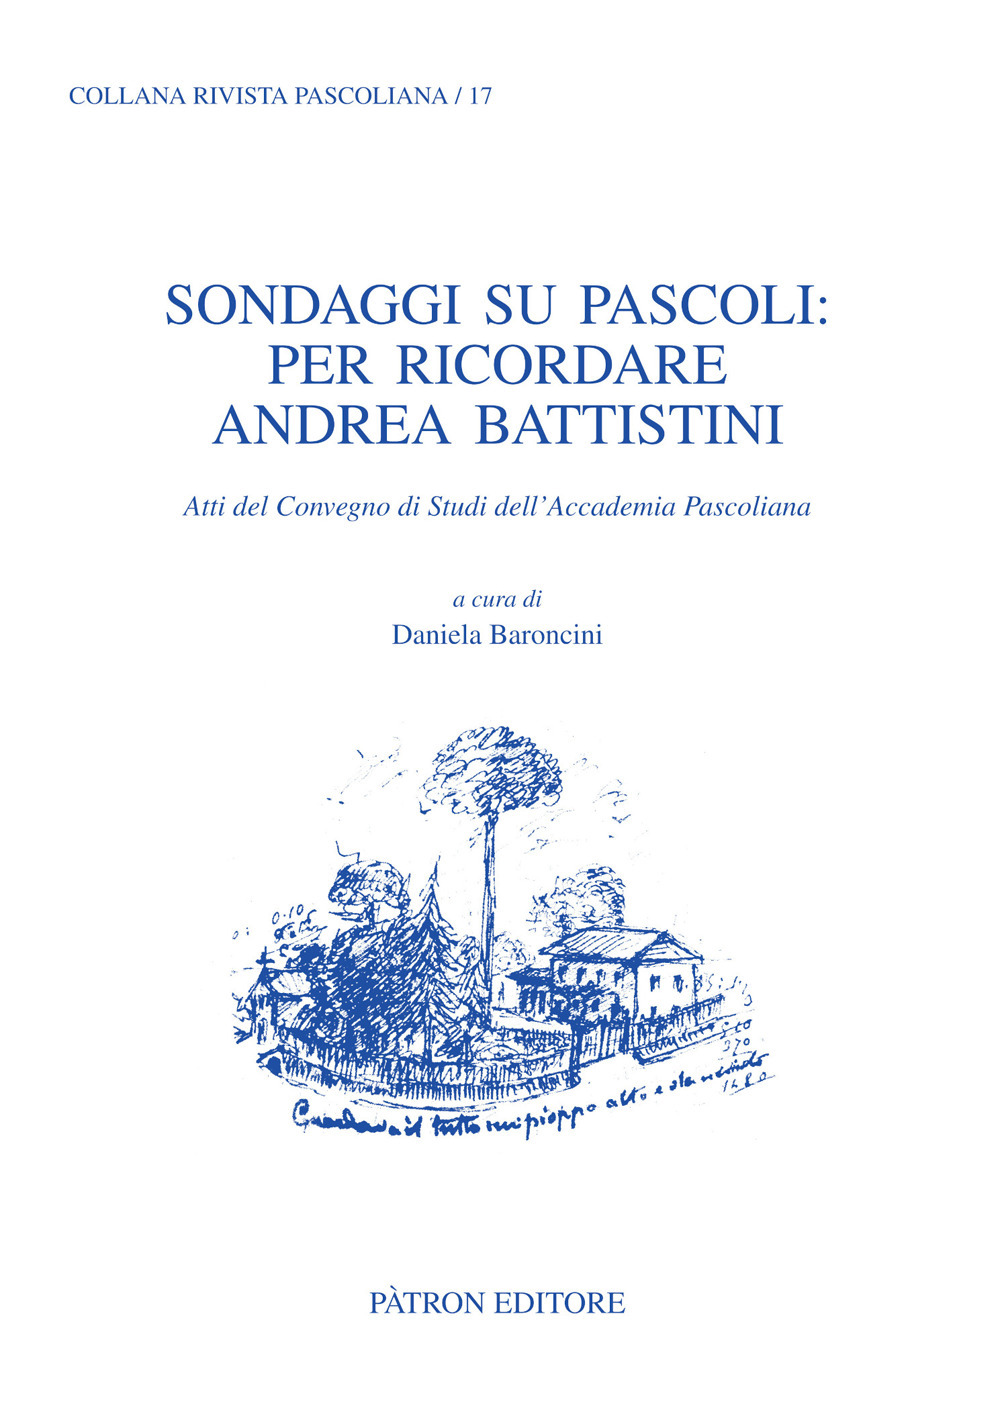 Sondaggi su Pascoli: per ricordare Andrea Battistini. Atti del Convegno di Studi dell'Accademia Pascoliana